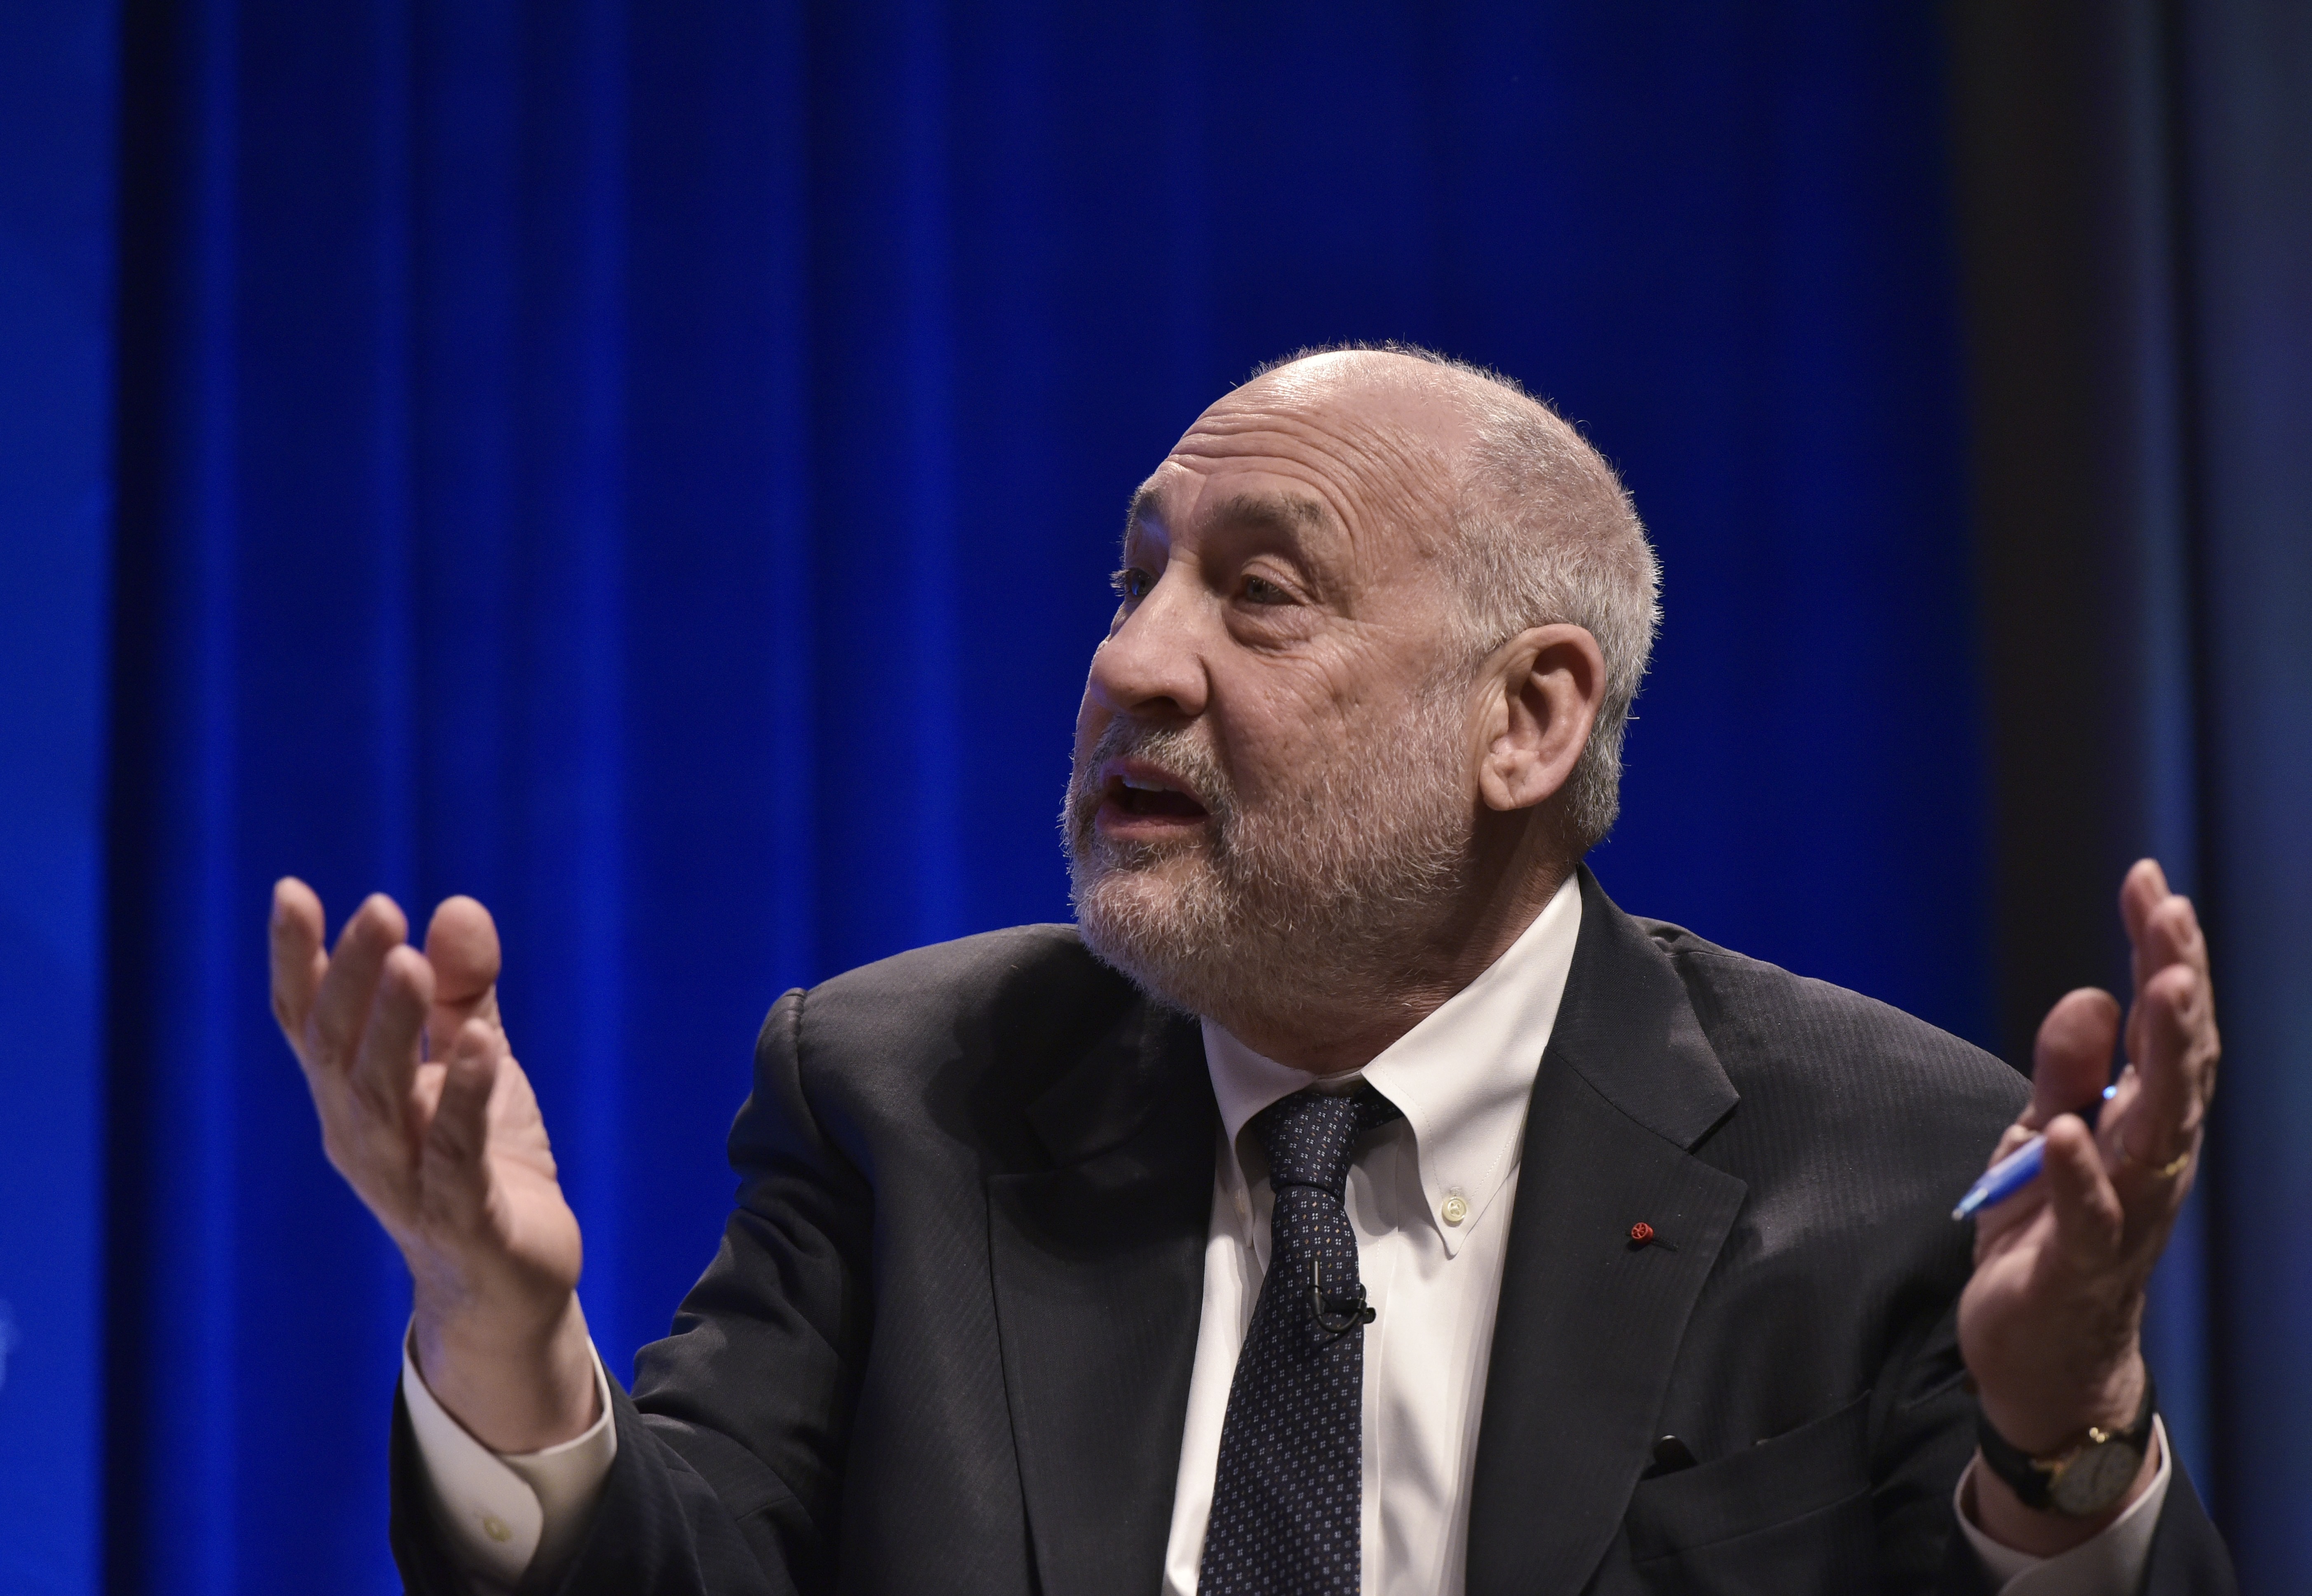 Joseph Stiglitz megpróbált segíteni a panamai kormánynak, hogyan legyenek kevésbé korruptak, de feladta